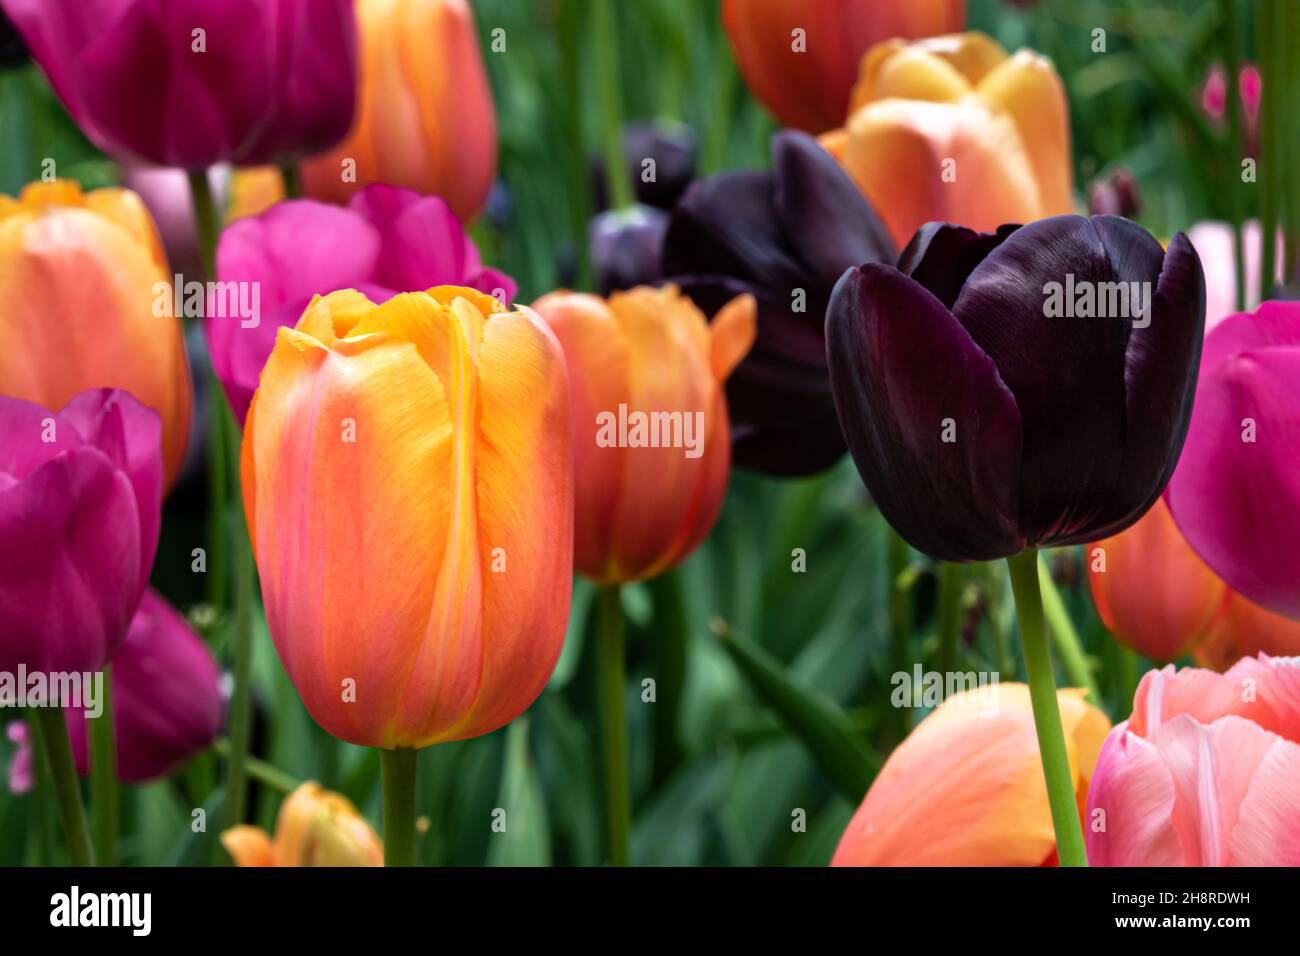 Nahaufnahme von Tulpen, große Farbvielfalt. Grüne Pflanzen im Hintergrund. Missouri Botanical Garden, St. Louis, Missouri. Stockfoto